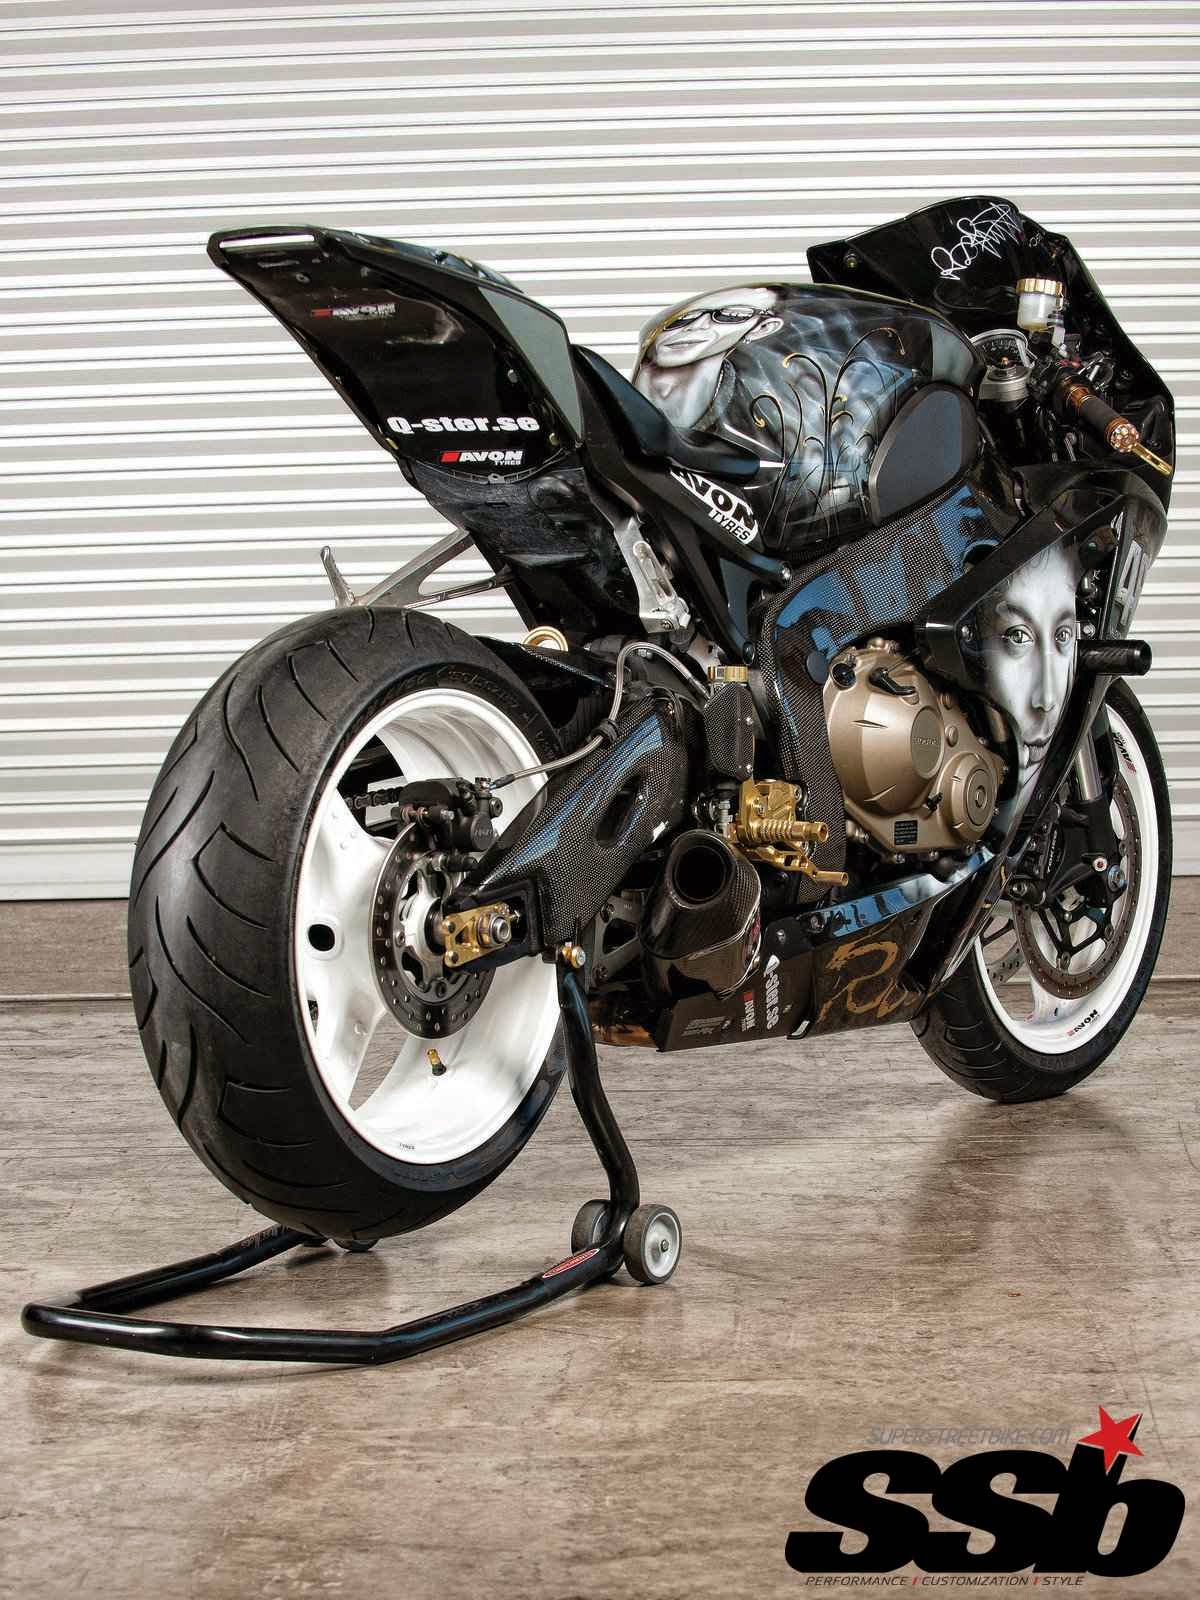 Koleksi Modifikasi Motor Ducati Rossi Terbaru Dan Terlengkap